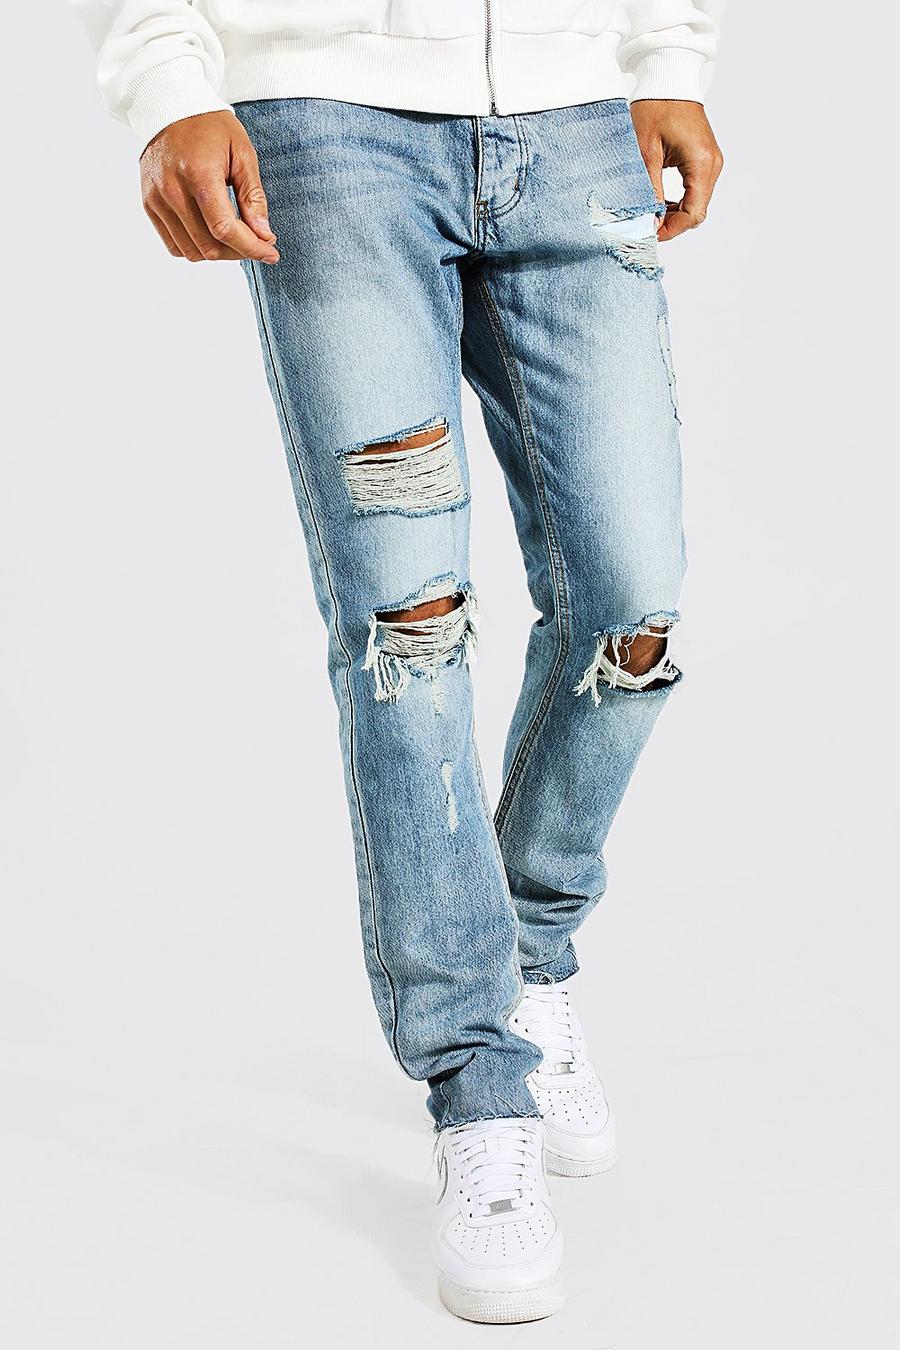 כחול עתיק ג'ינס ripped בגזרה צרה עם קרעים במכפלת, לגברים גבוהים